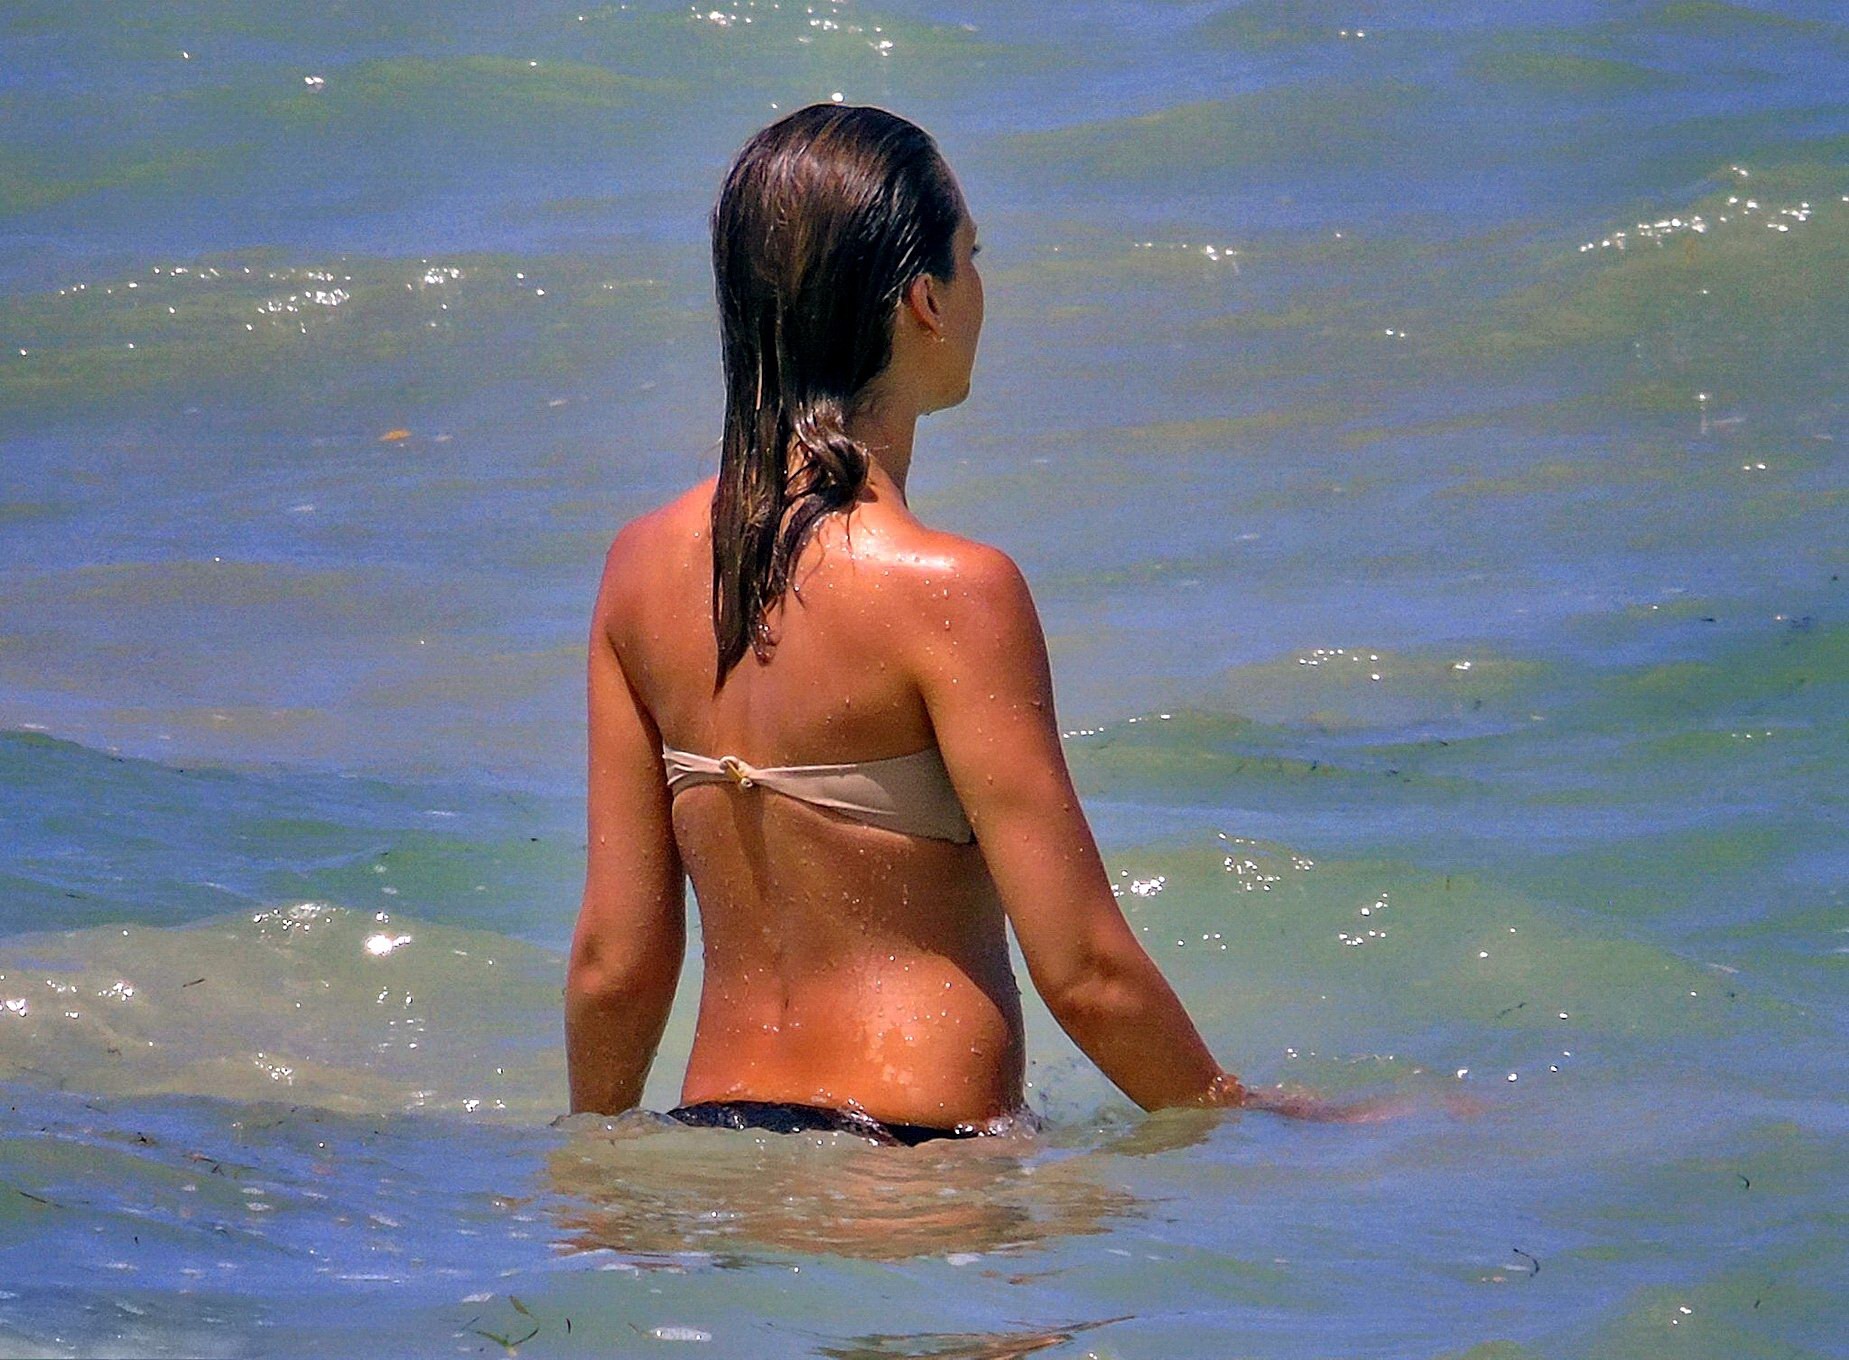 Jessica alba portant un bikini sans bretelles sur une plage au mexique
 #75191505